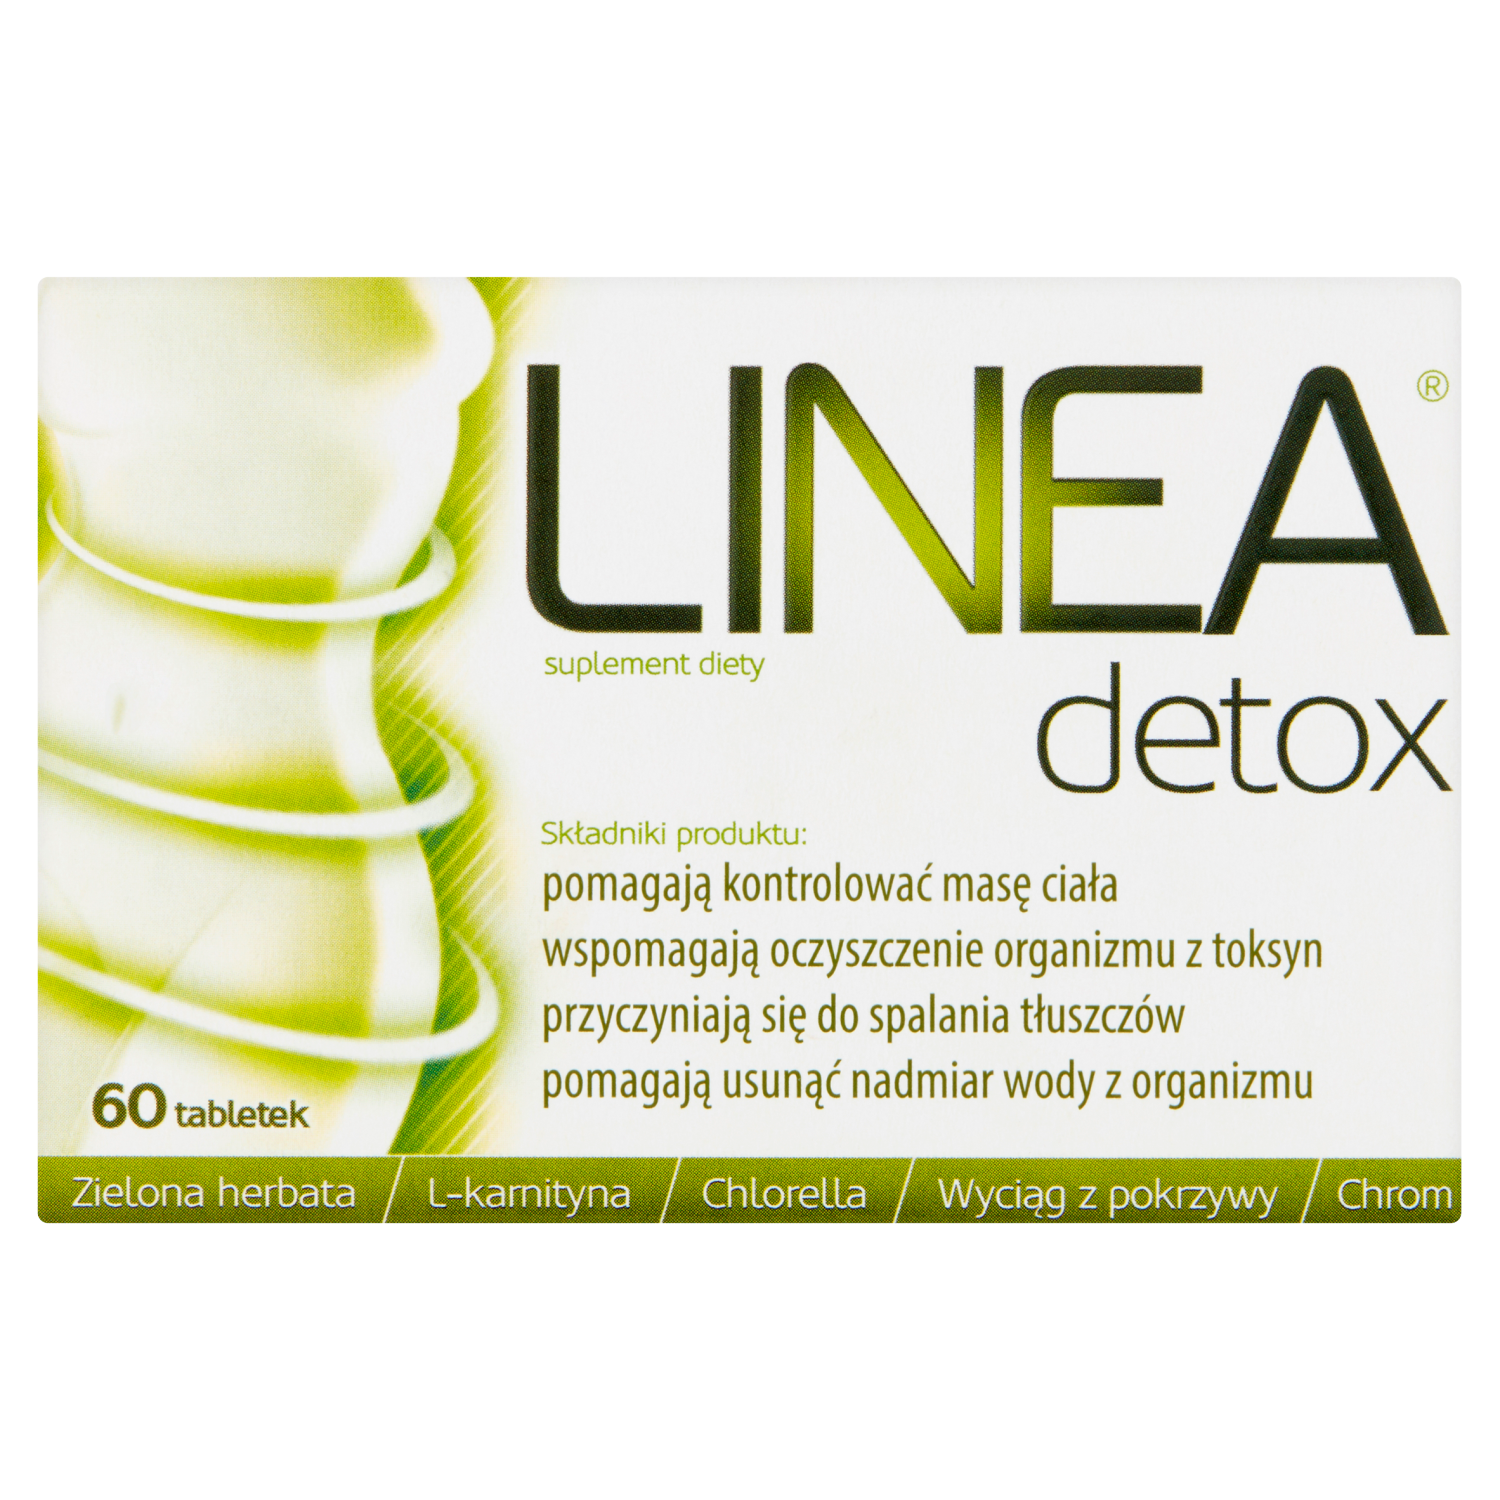 биологически активная добавка синтезит detox Linea Detox биологически активная добавка, 60 таблеток/1 упаковка